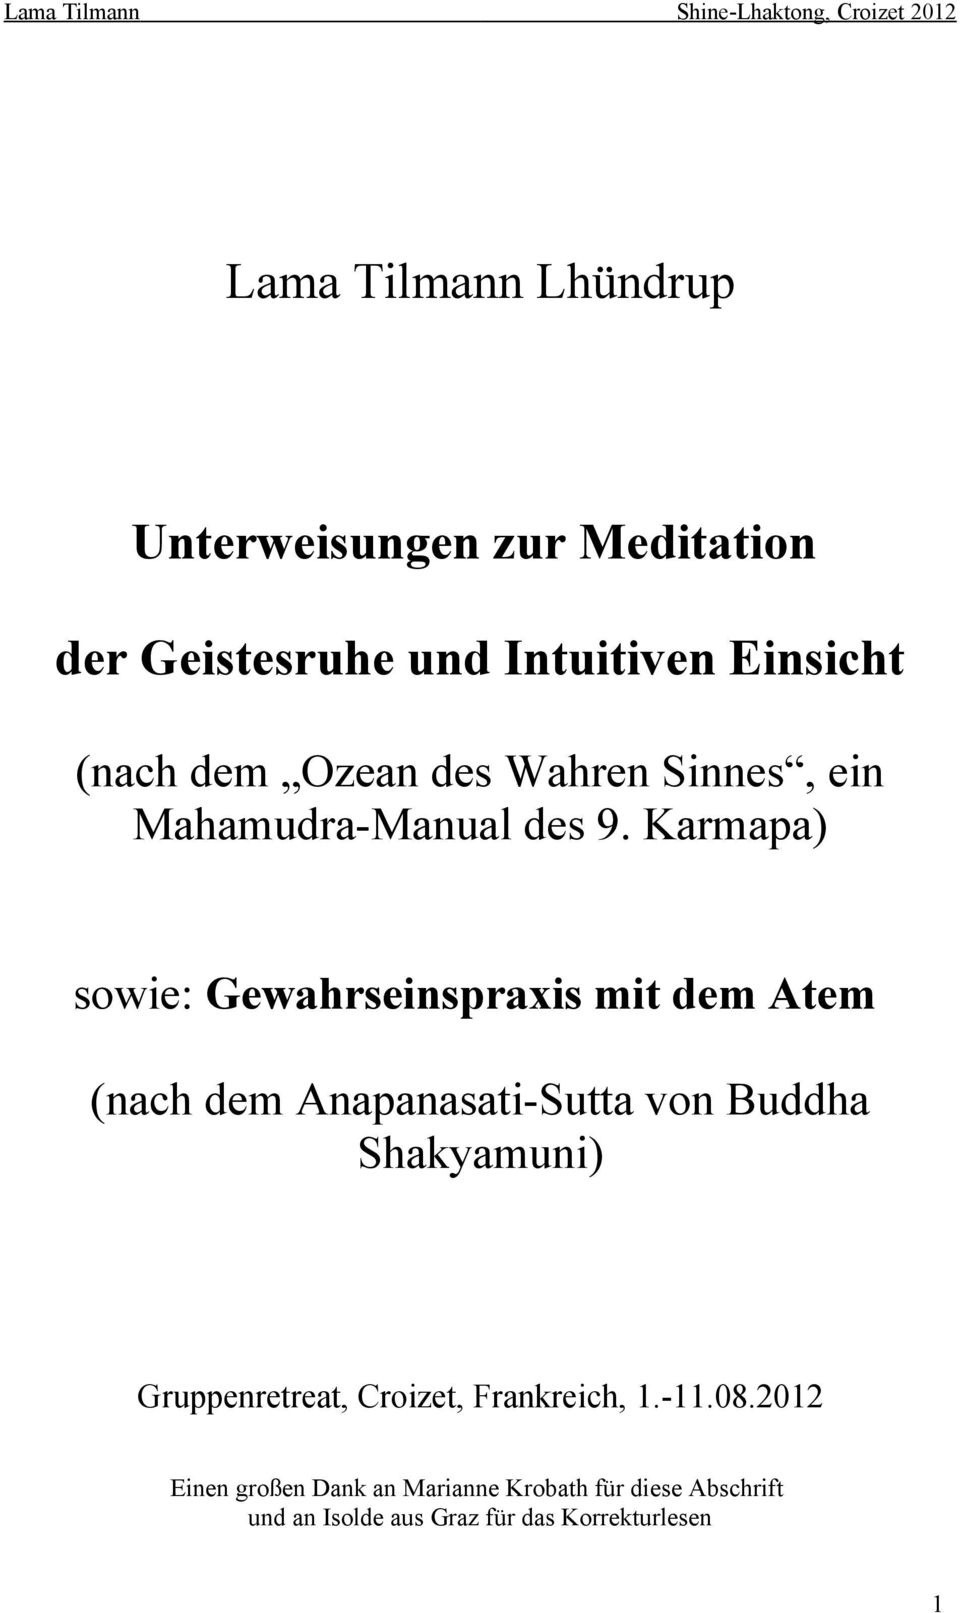 Karmapa) sowie: Gewahrseinspraxis mit dem Atem (nach dem Anapanasati-Sutta von Buddha Shakyamuni)